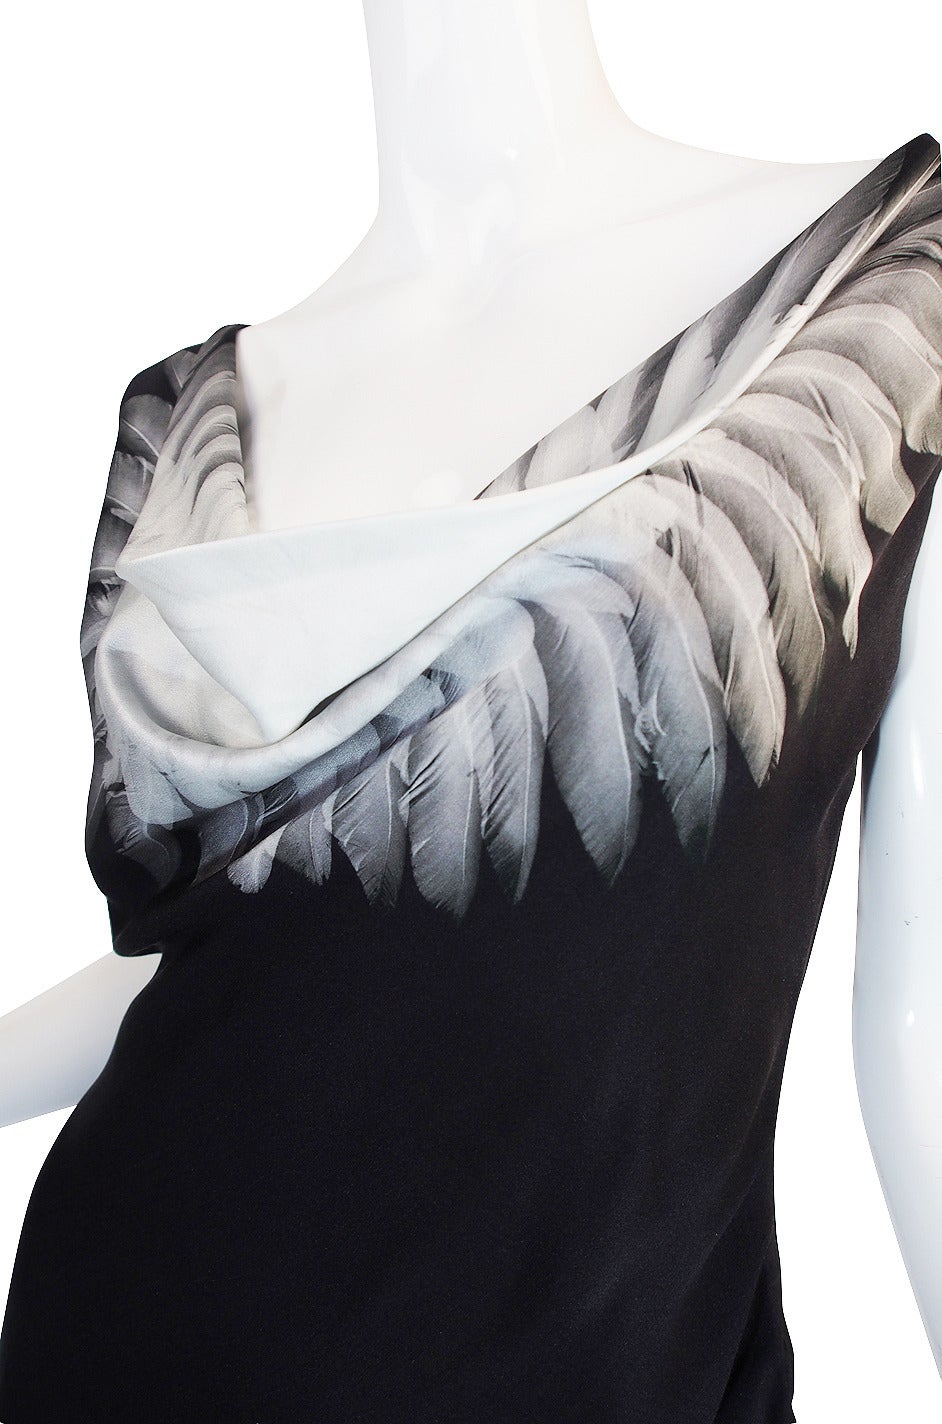 S/S 2009 Alexander McQueen Feather Print Silk Dress 2